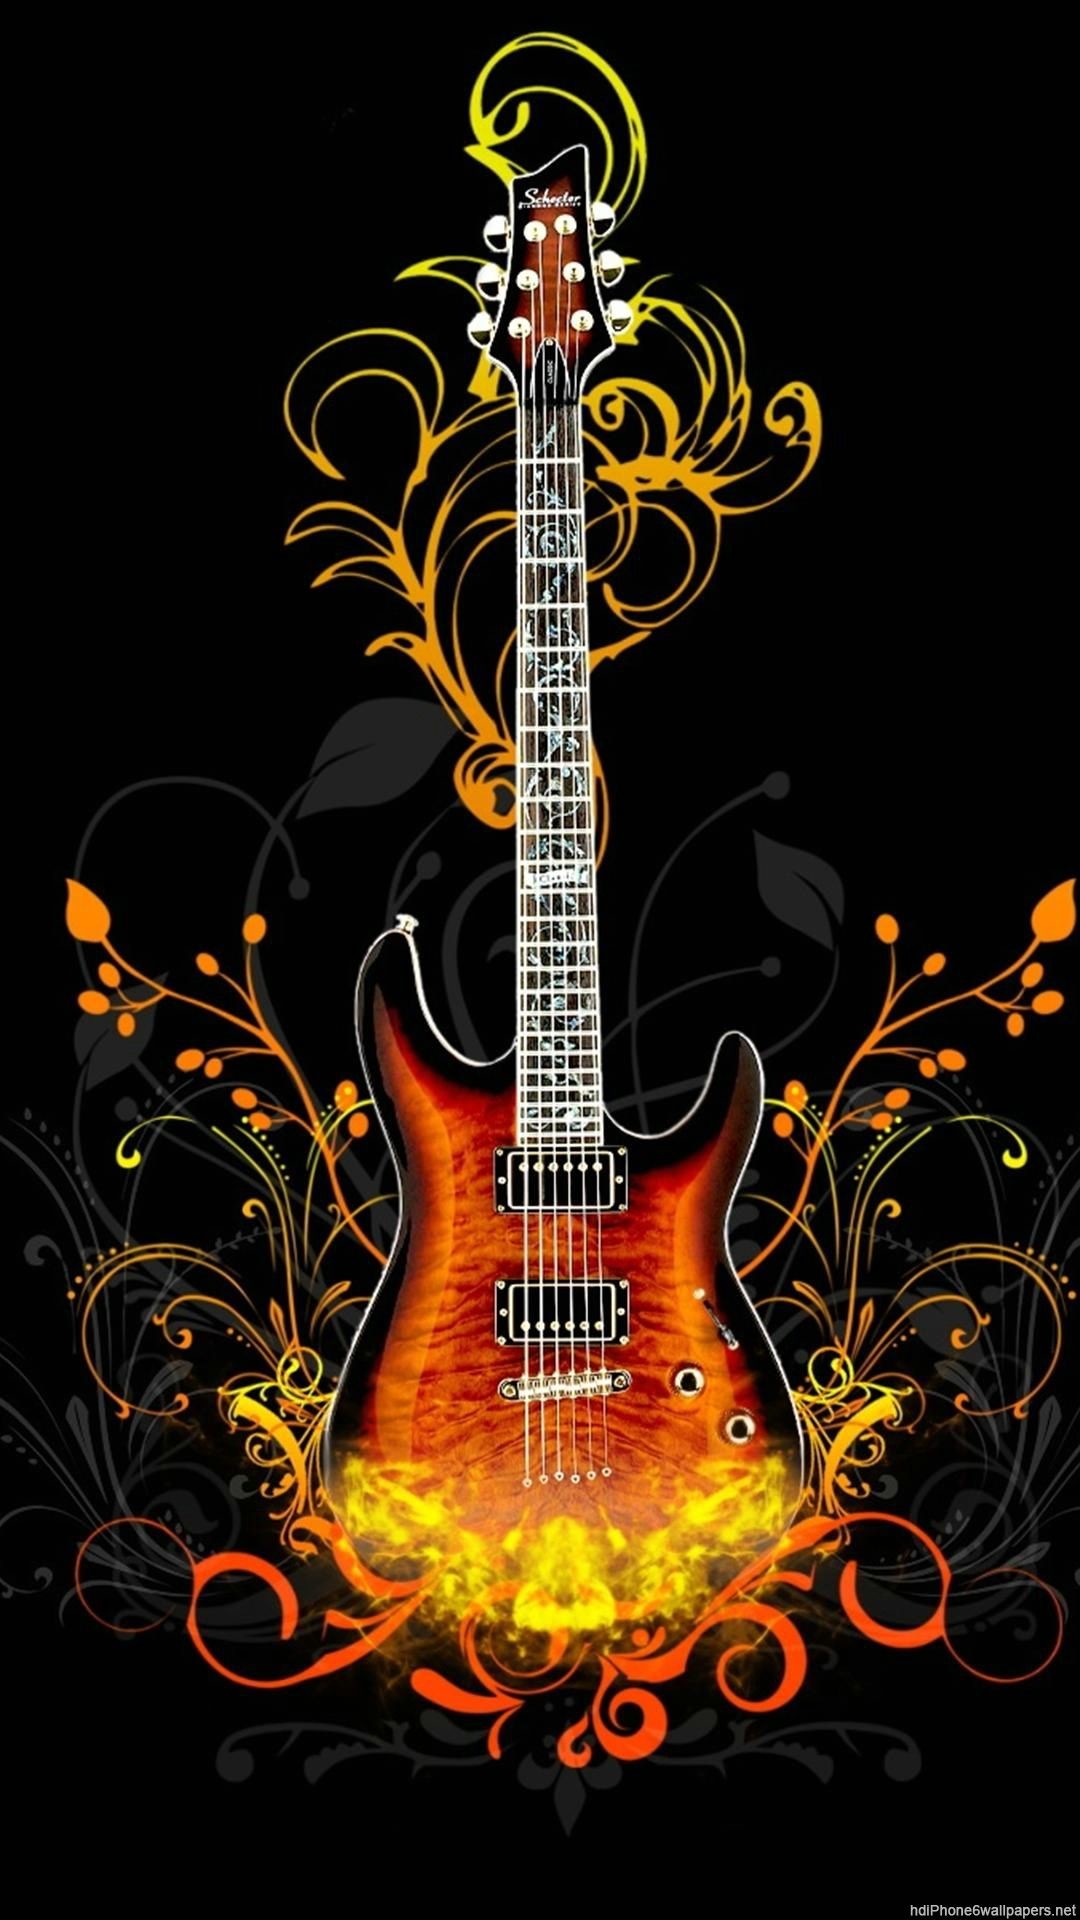 1080x1920 3D Guitar Wallpaper iPhone - Best iPhone Wallpaper